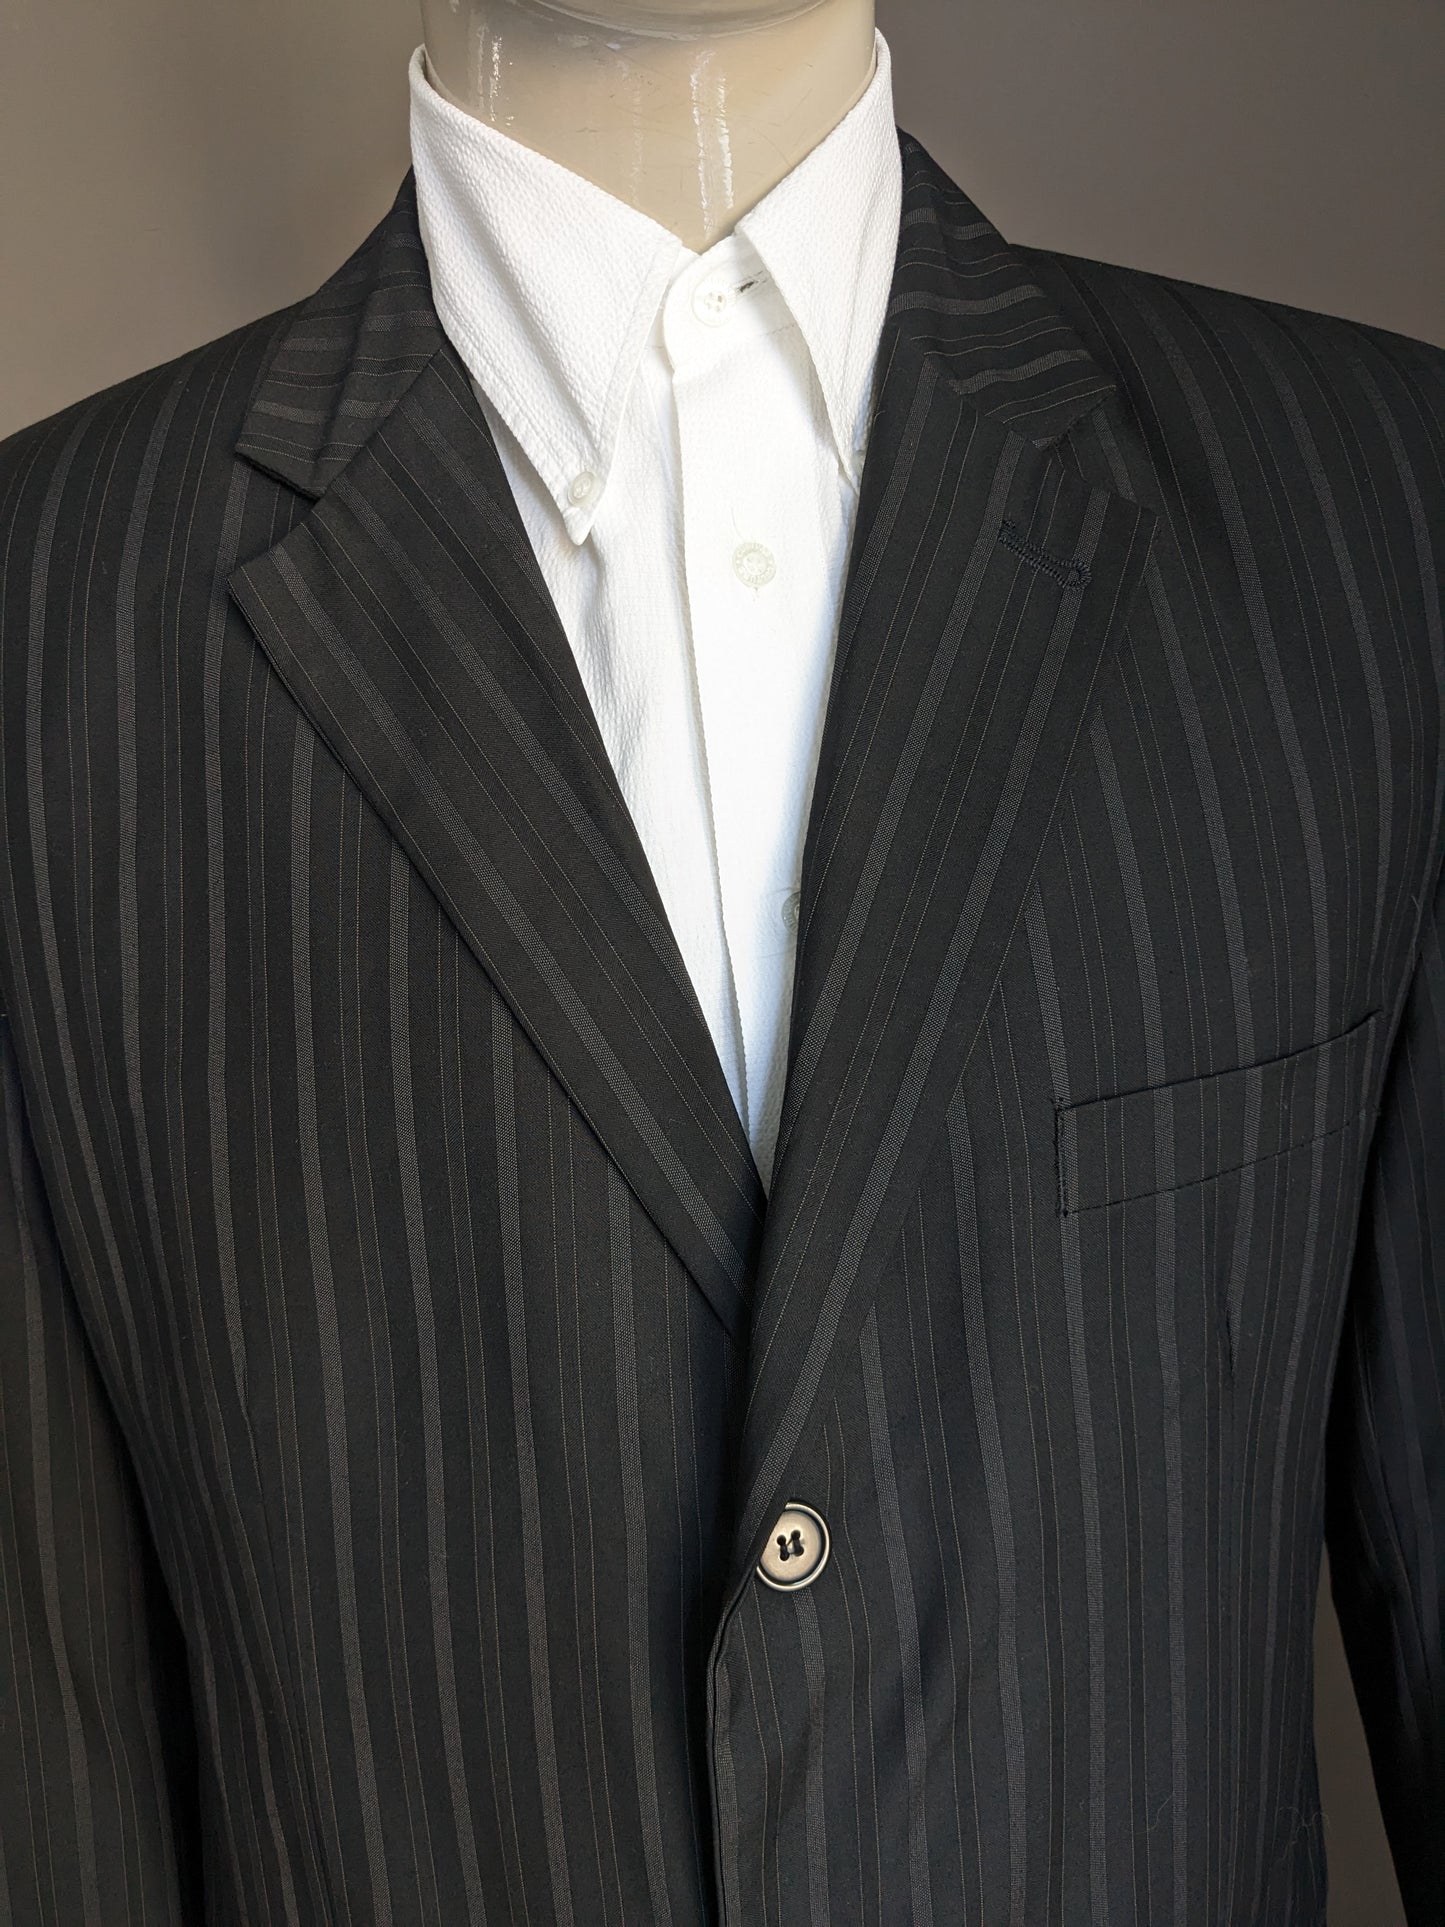 Vintage Jacke. Schwarz grau gestreift. Größe 58 / xl.